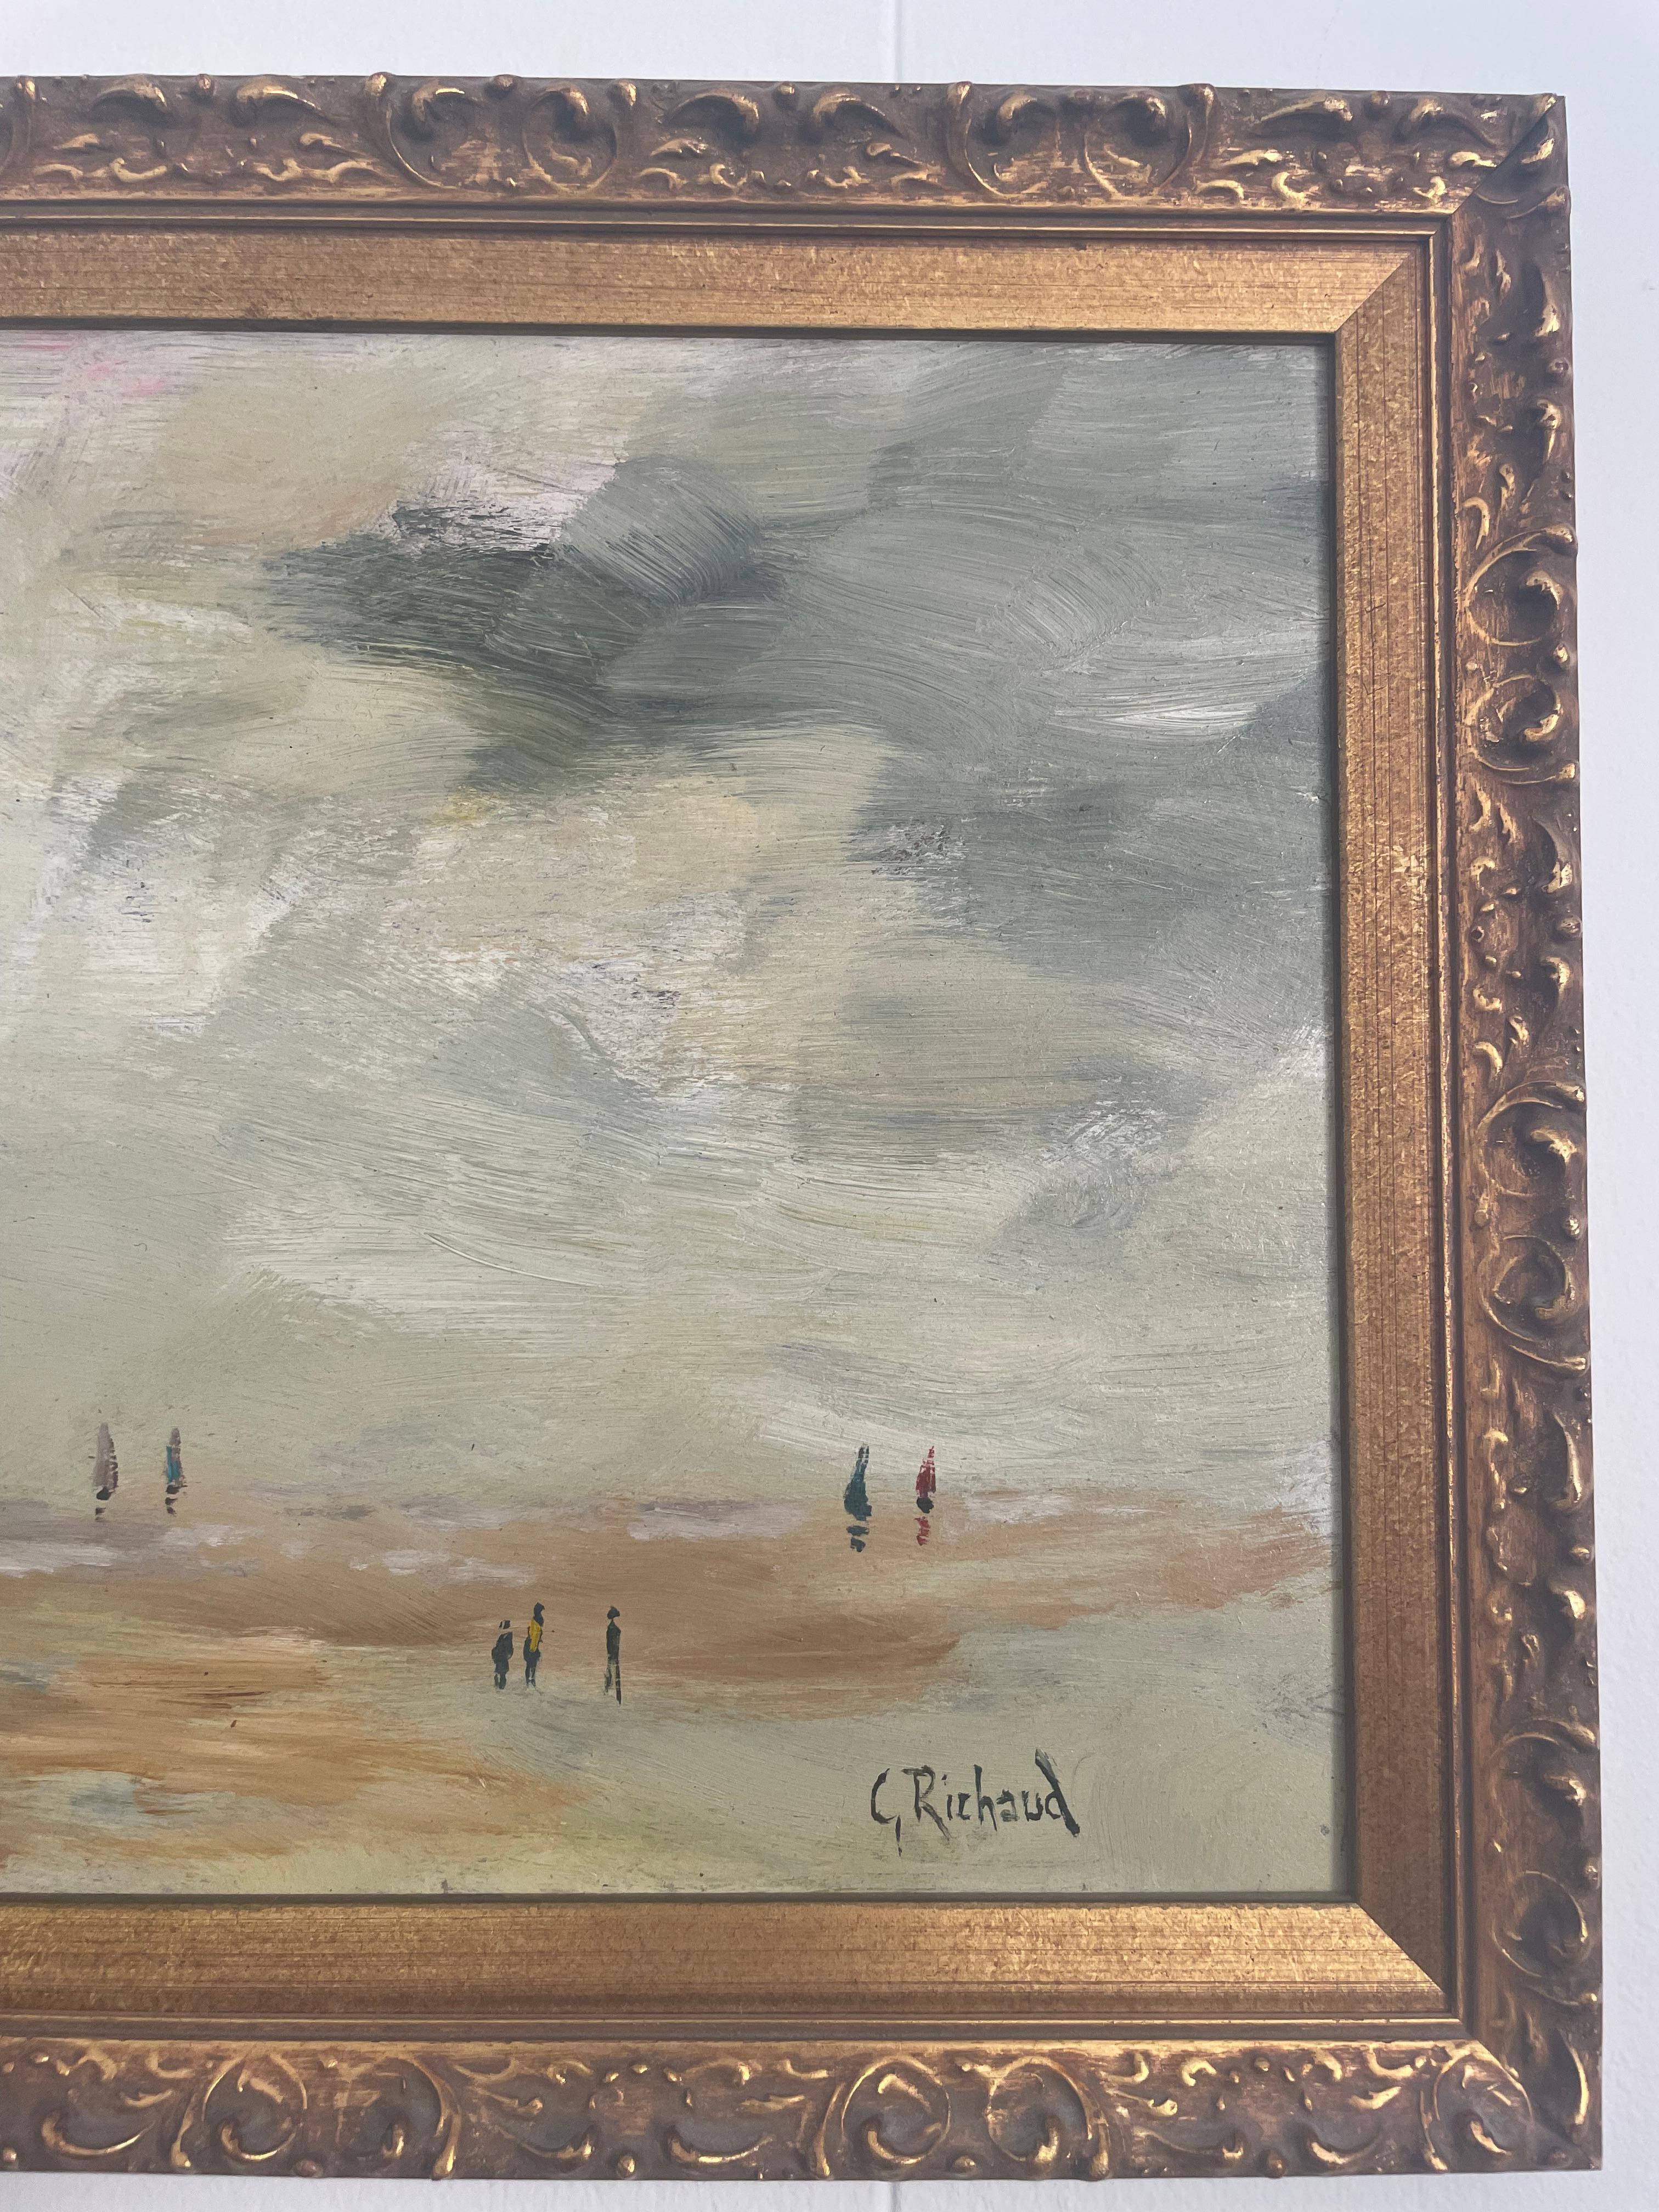 Huile sur toile signée par l'artiste français Georges Richaud. 
La peinture représente des personnes sur le rivage d'une plage, avec un drapeau français flottant dans la brise. 
G.Richaud est un artiste français accrédité du 20ème siècle qui a été